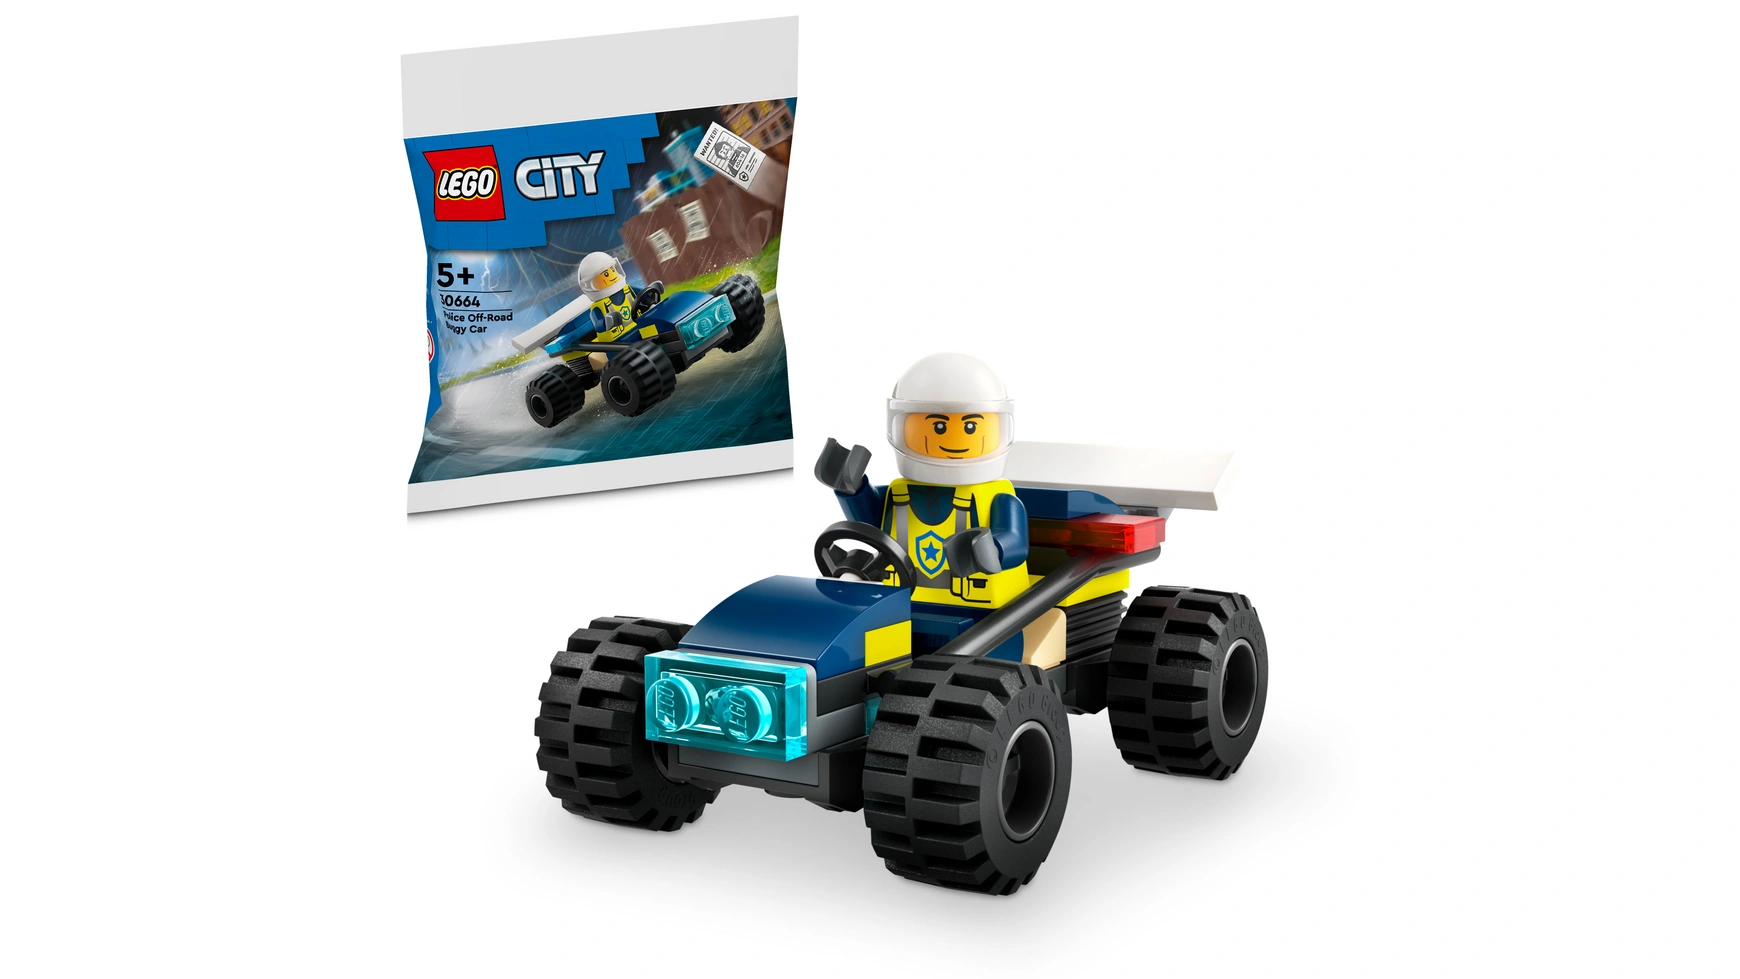 Lego City Полицейский внедорожный багги цена и фото